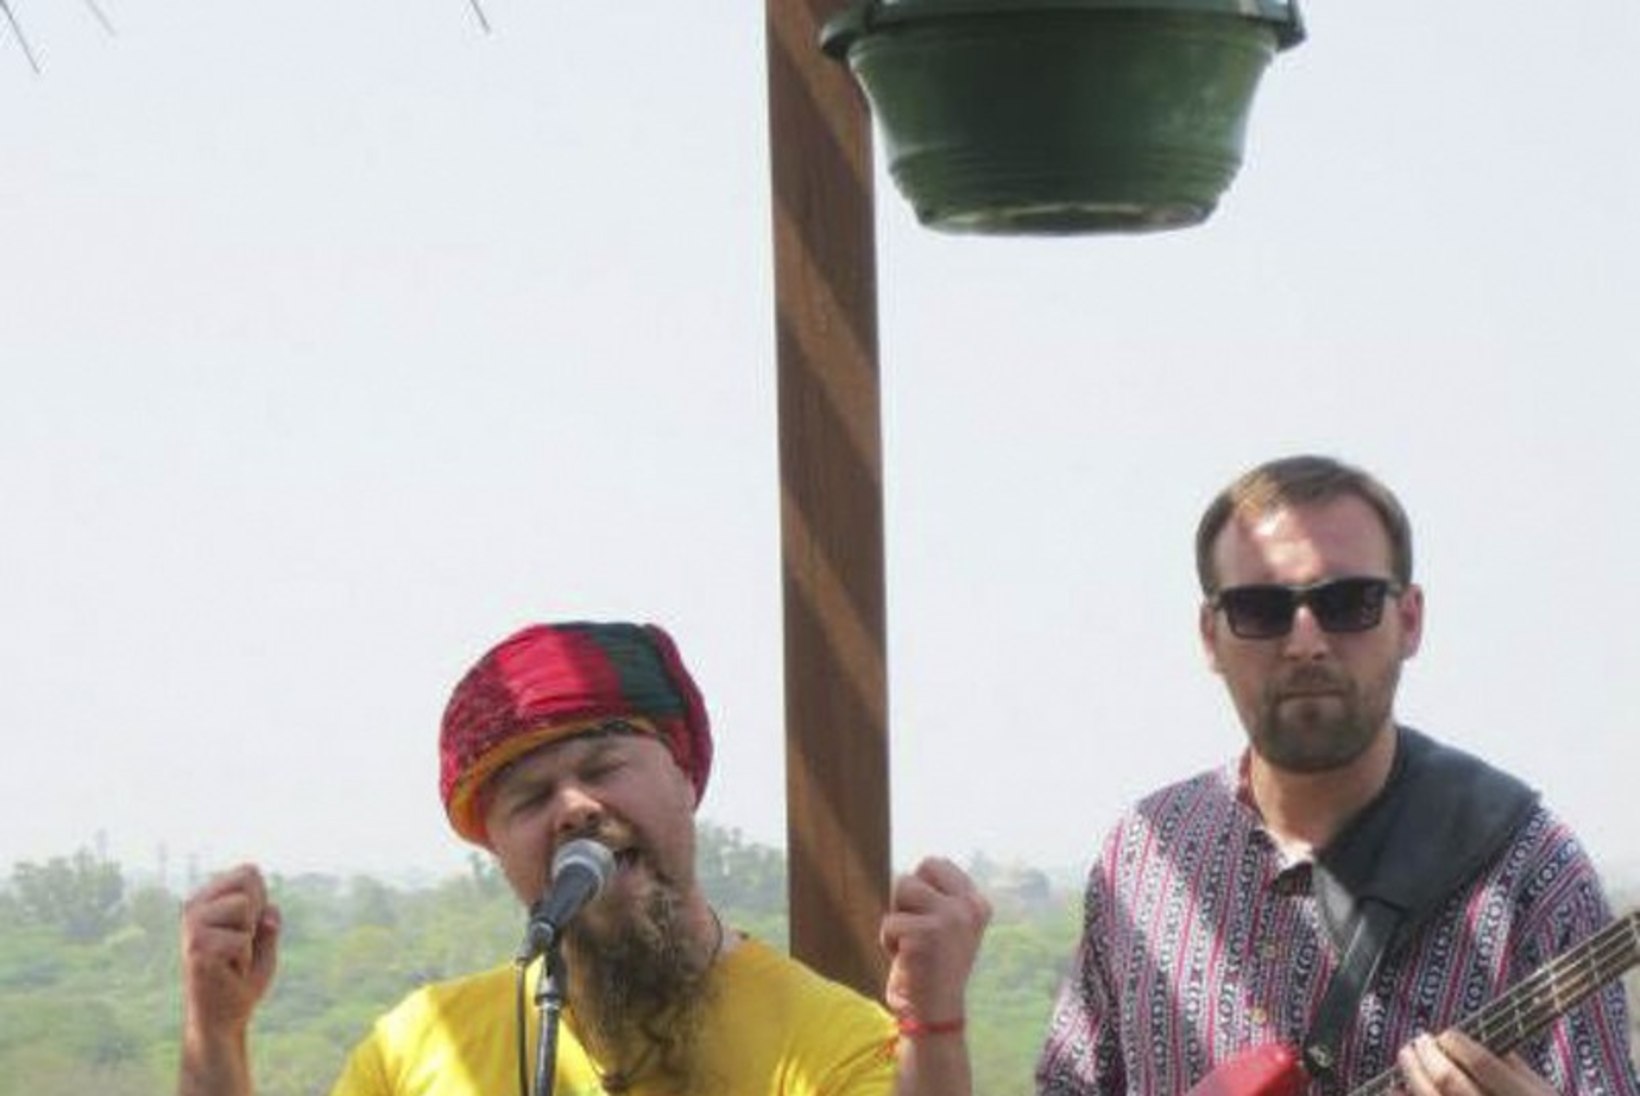 Eesti bänd Bombillaz laulis Indias linnaväljaku jagu publikut rõõmust kargama